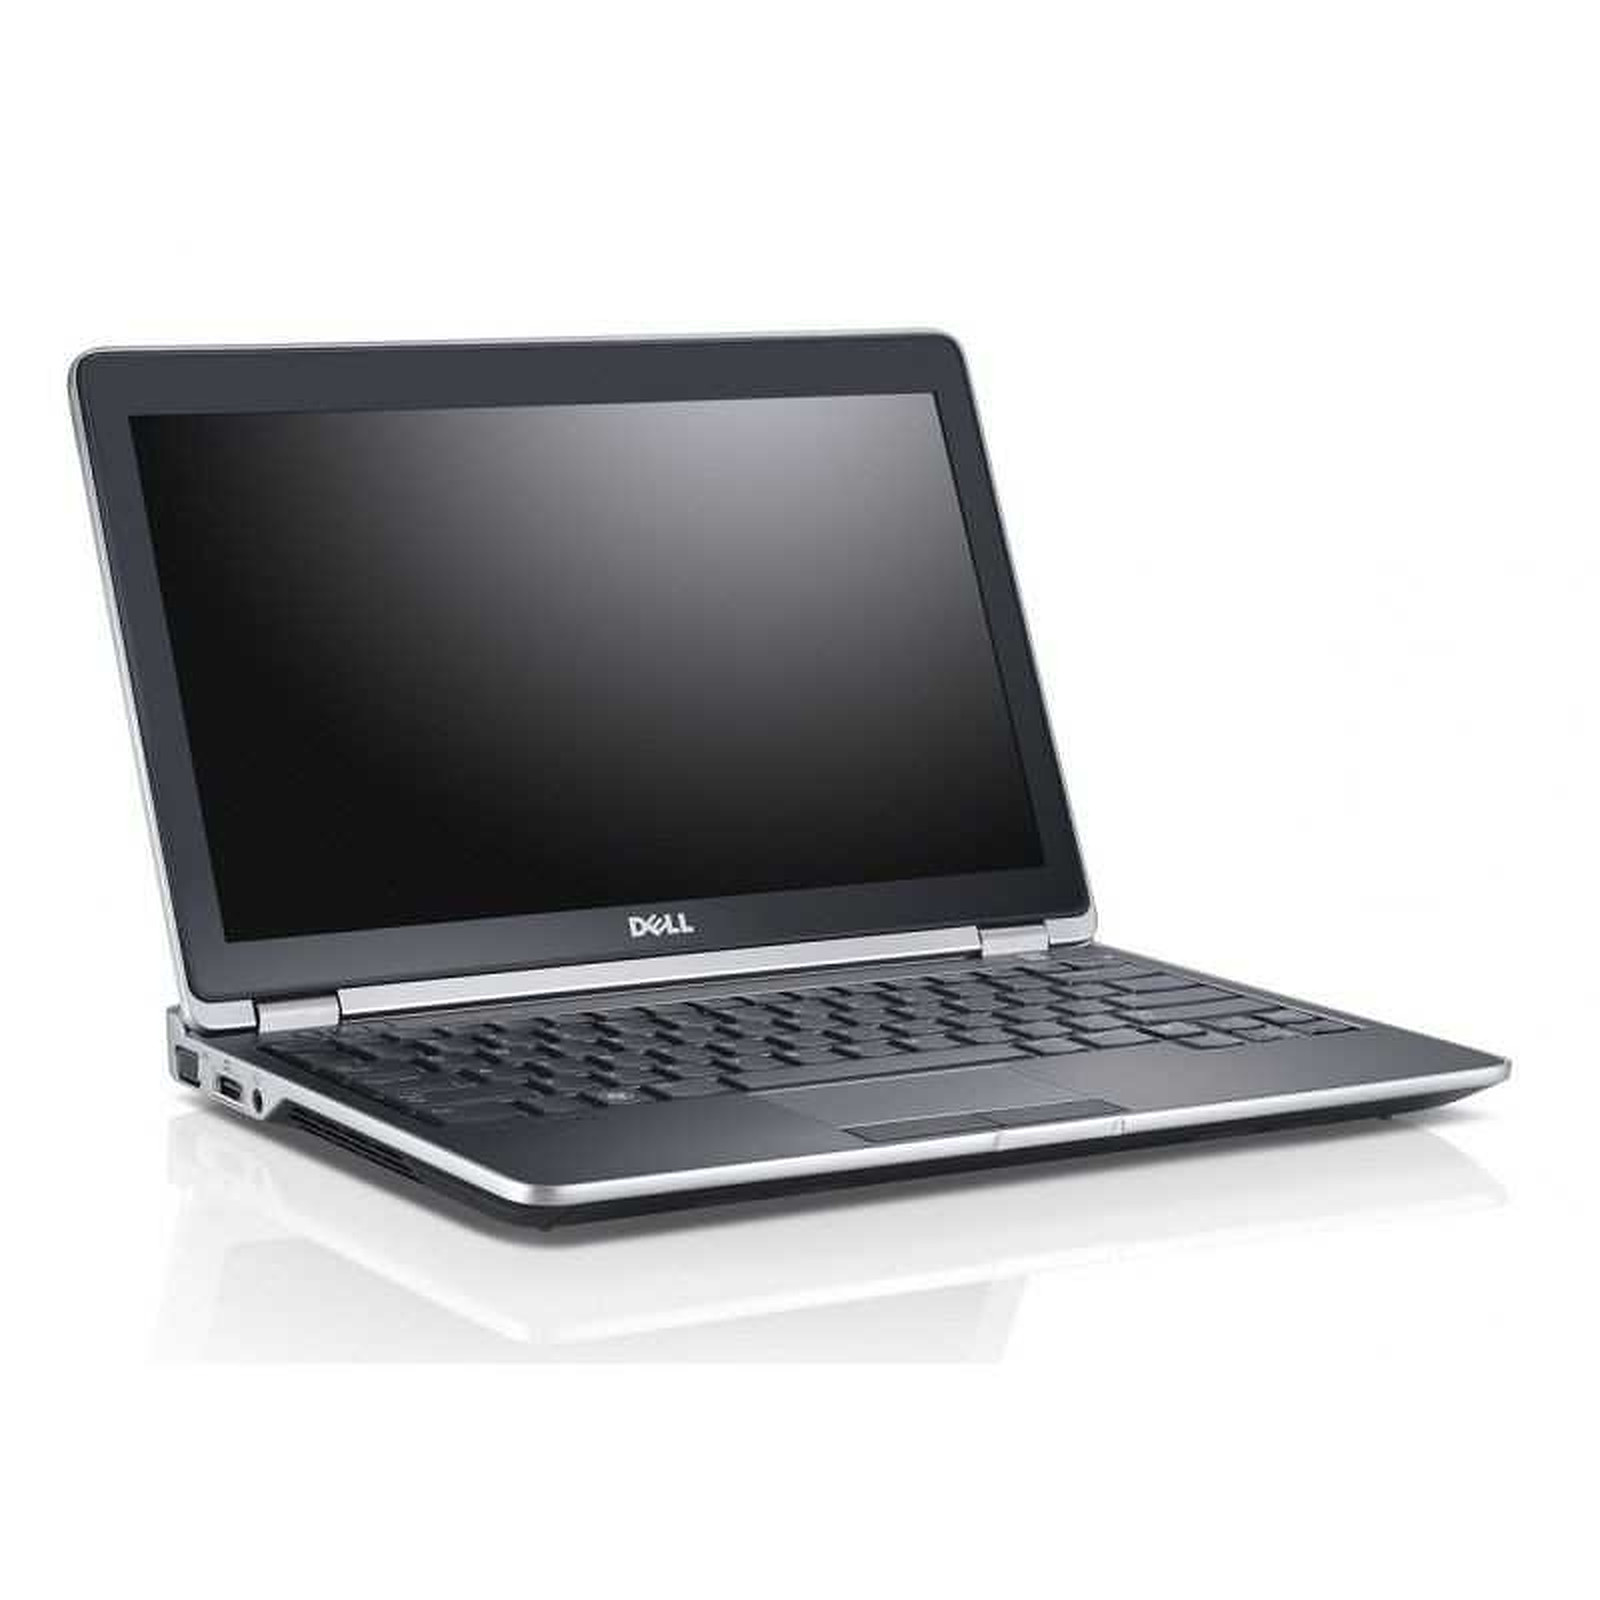 Dell Latitude E6230 (E6230-B-5166) (E6230-B) · Reconditionne - PC portable reconditionne Dell